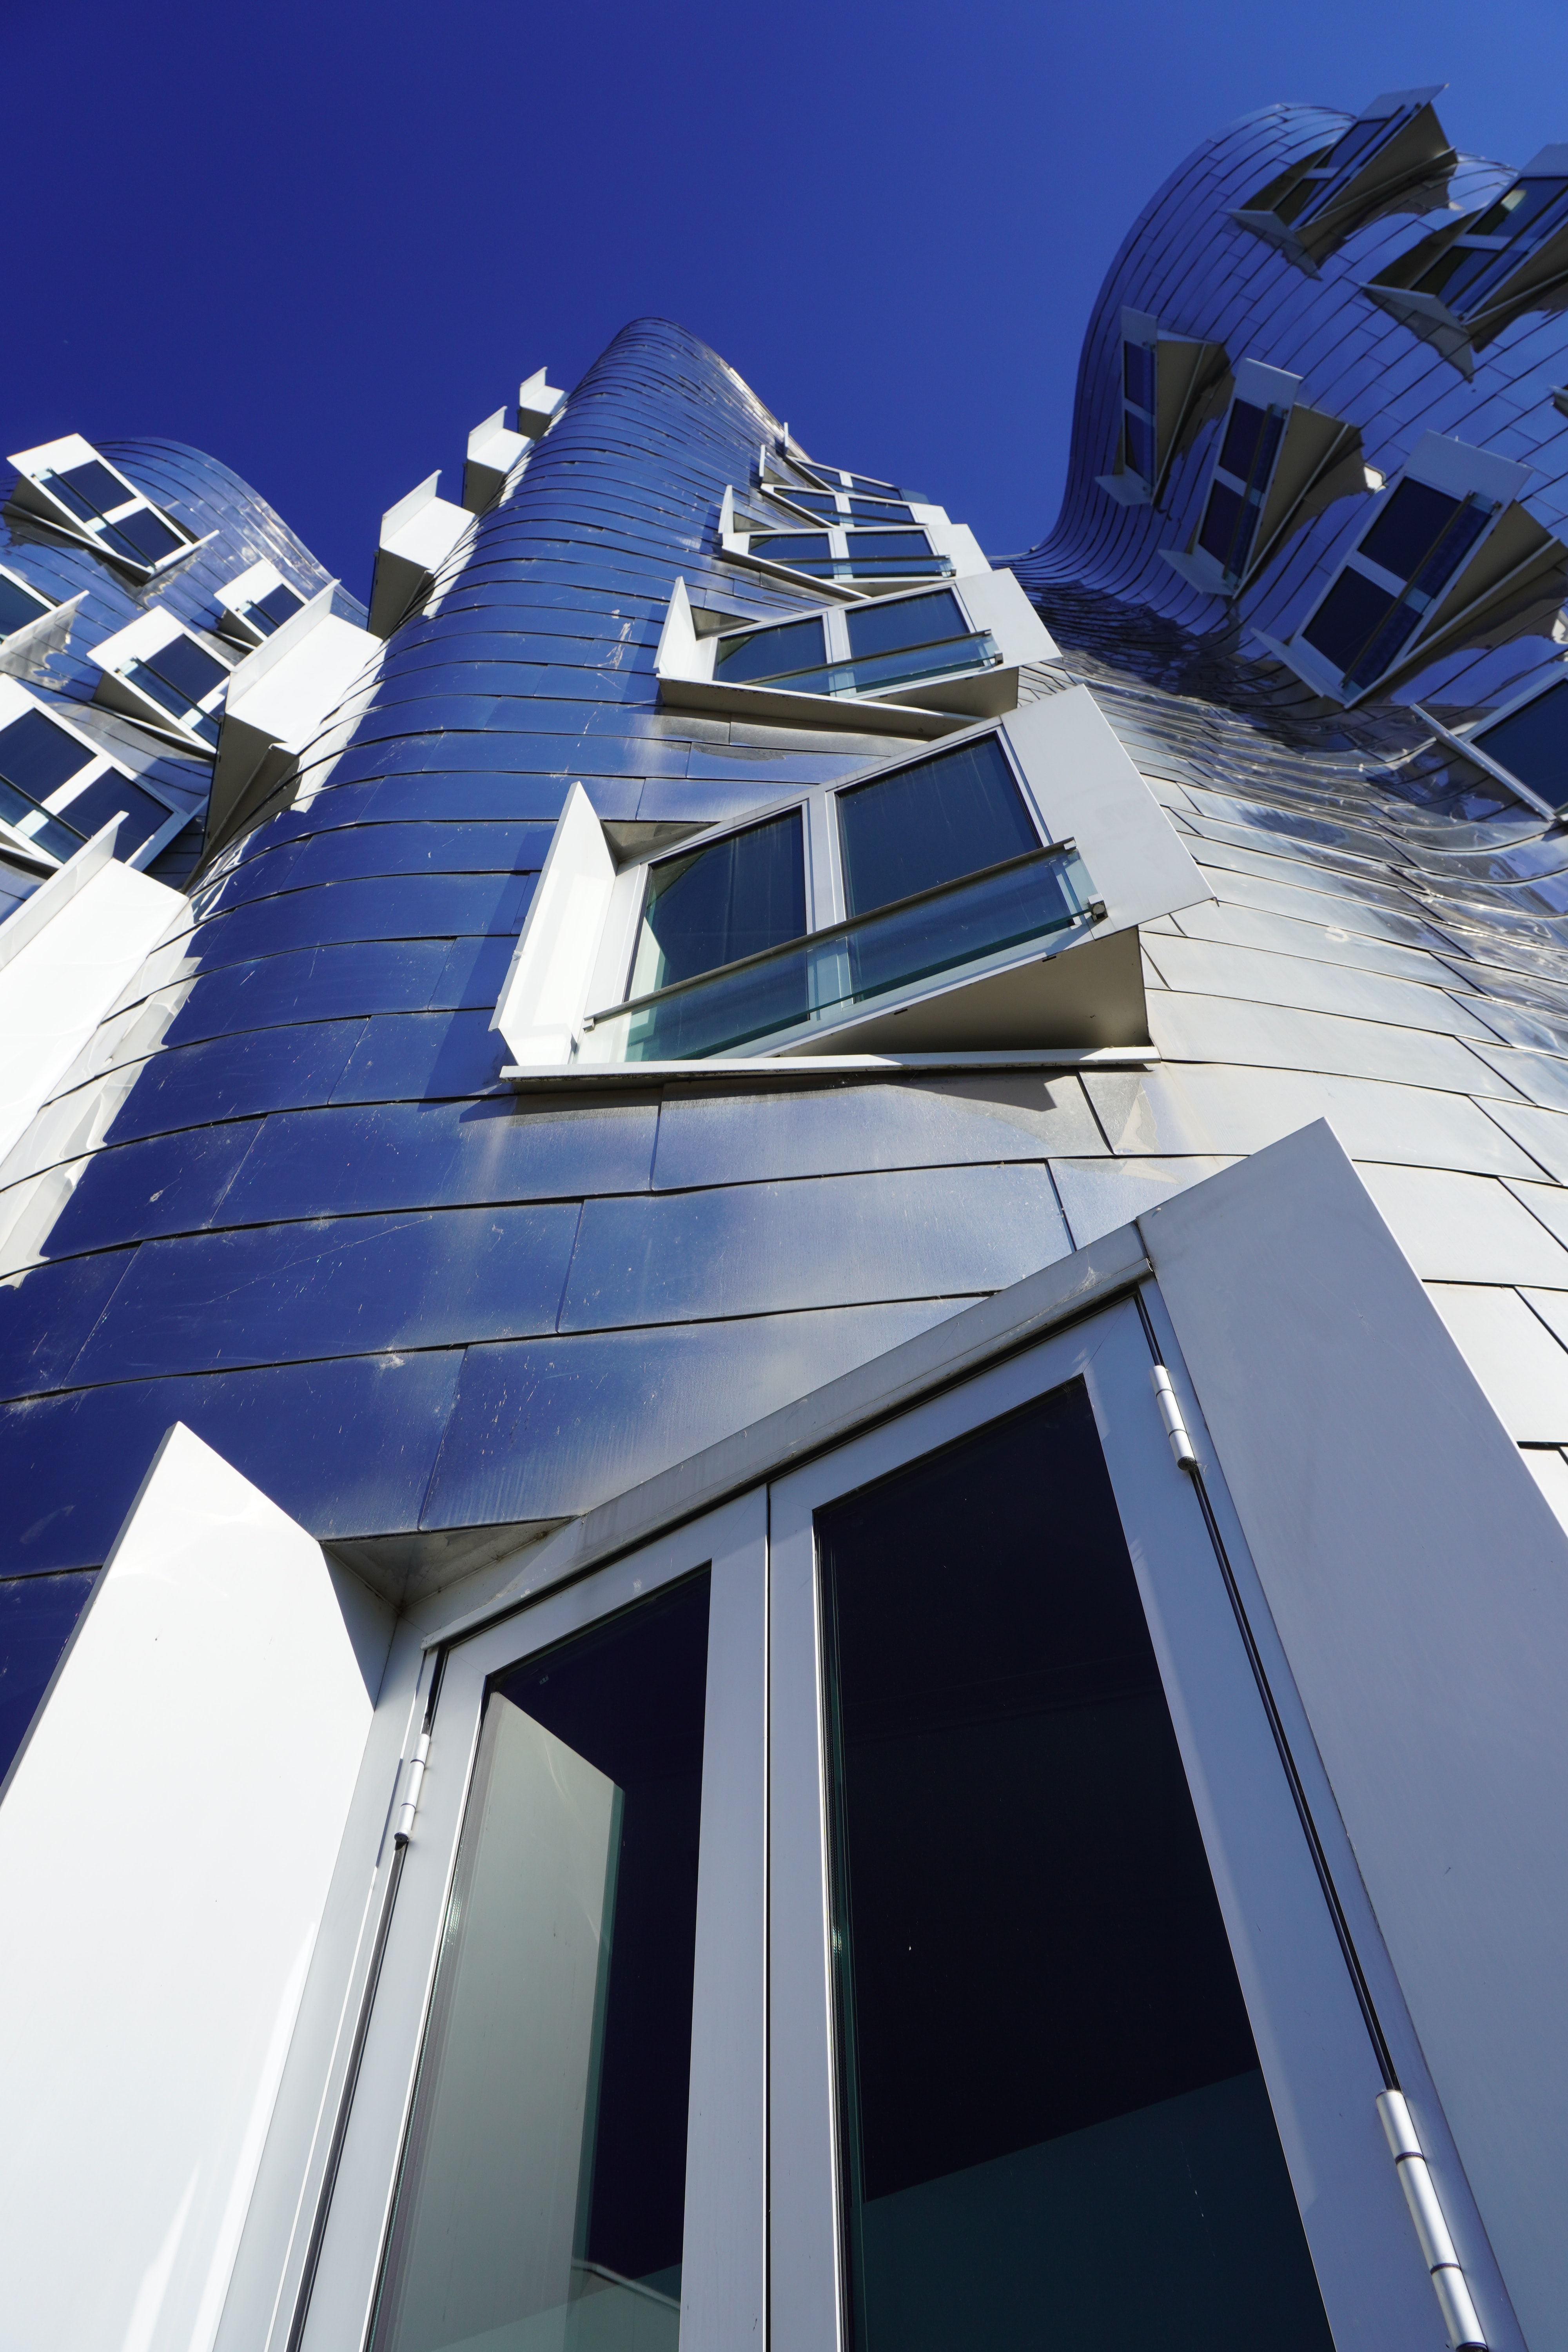 Der Neue Zollhof des US-amerikanischen Architekten Frank O. Gehry steht für den Strukturwandel des Düsseldorfer Hafens./ Foto © Sara Sadeghloo,unsplash